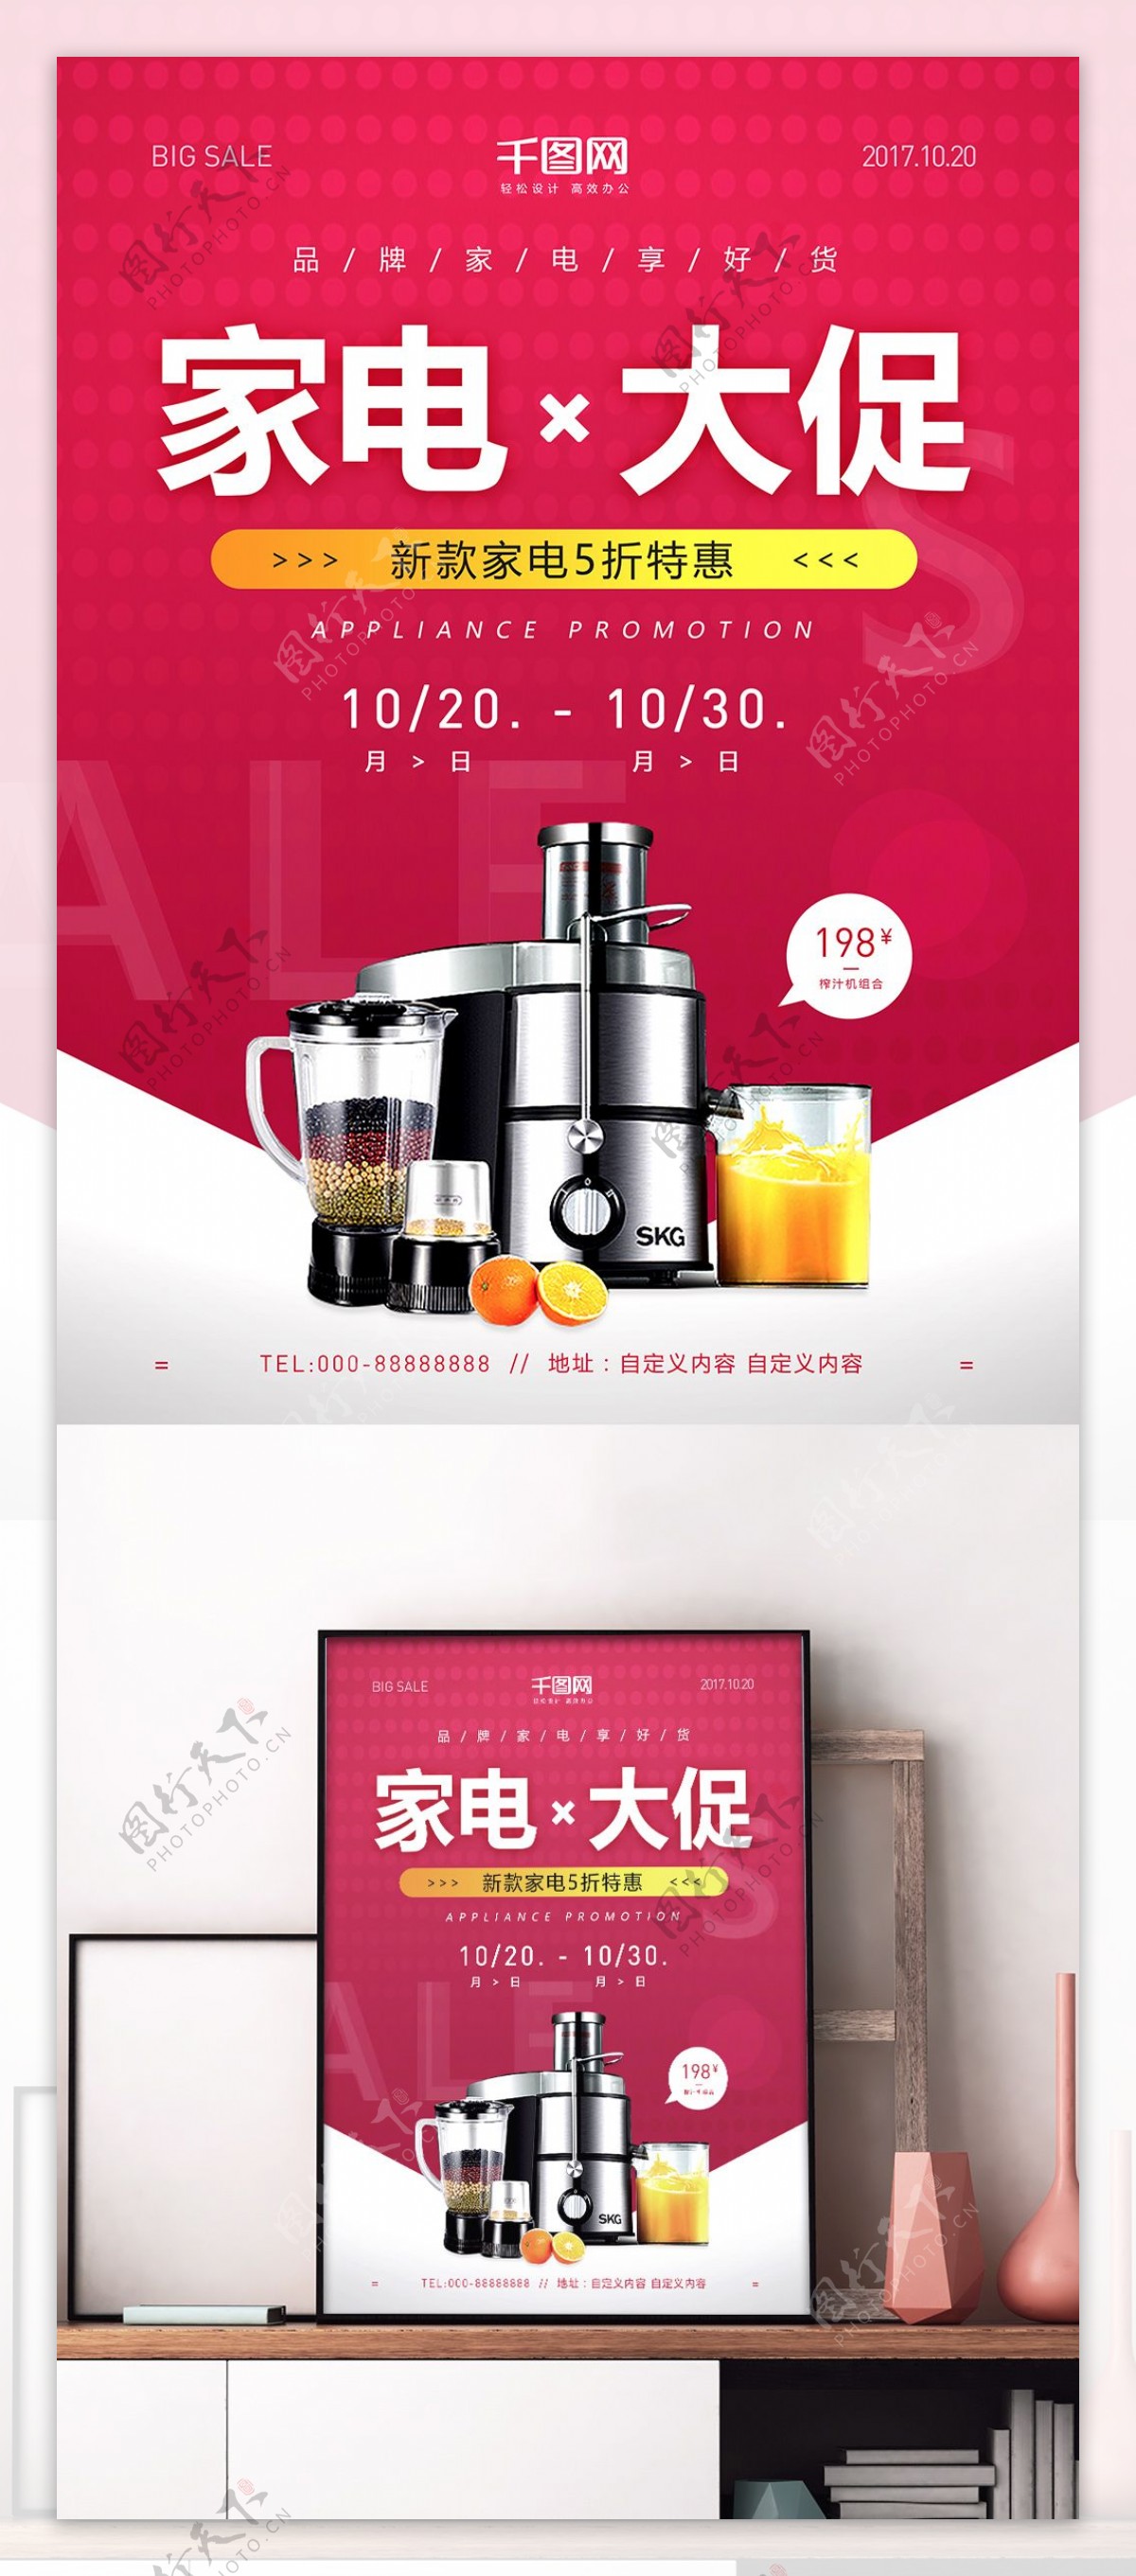 红色简约品牌家电大促特惠榨汁机促销海报